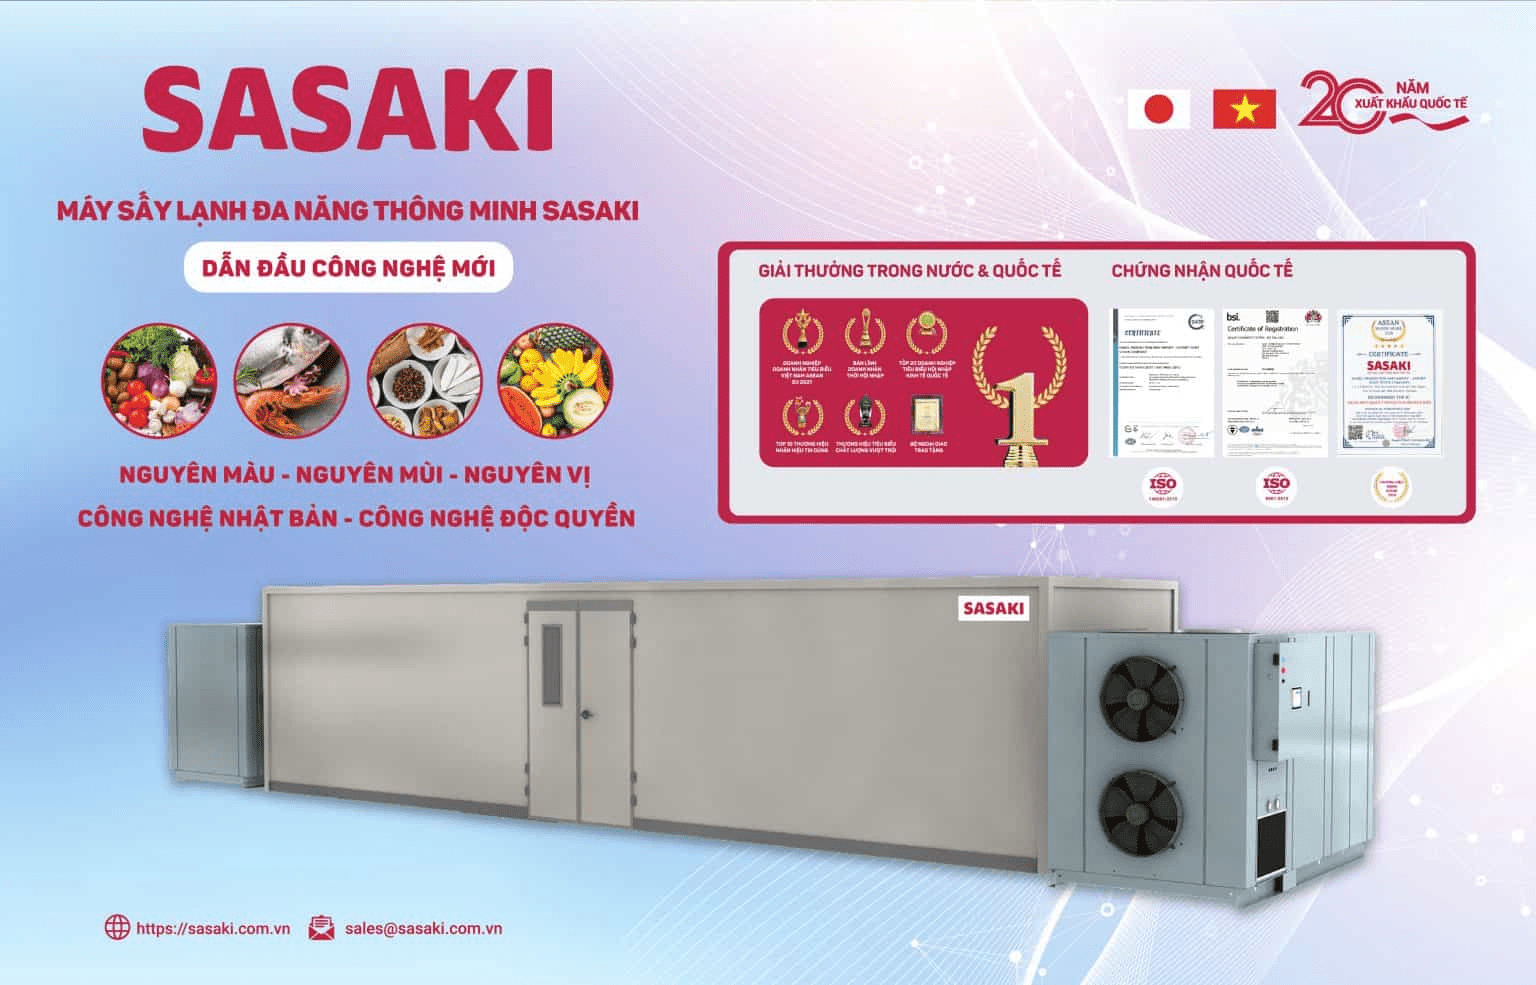 Một trong những đơn vị cung cấp máy sấy lạnh nấm được ưa chuộng và tin tưởng nhất hiện nay là SASAKI